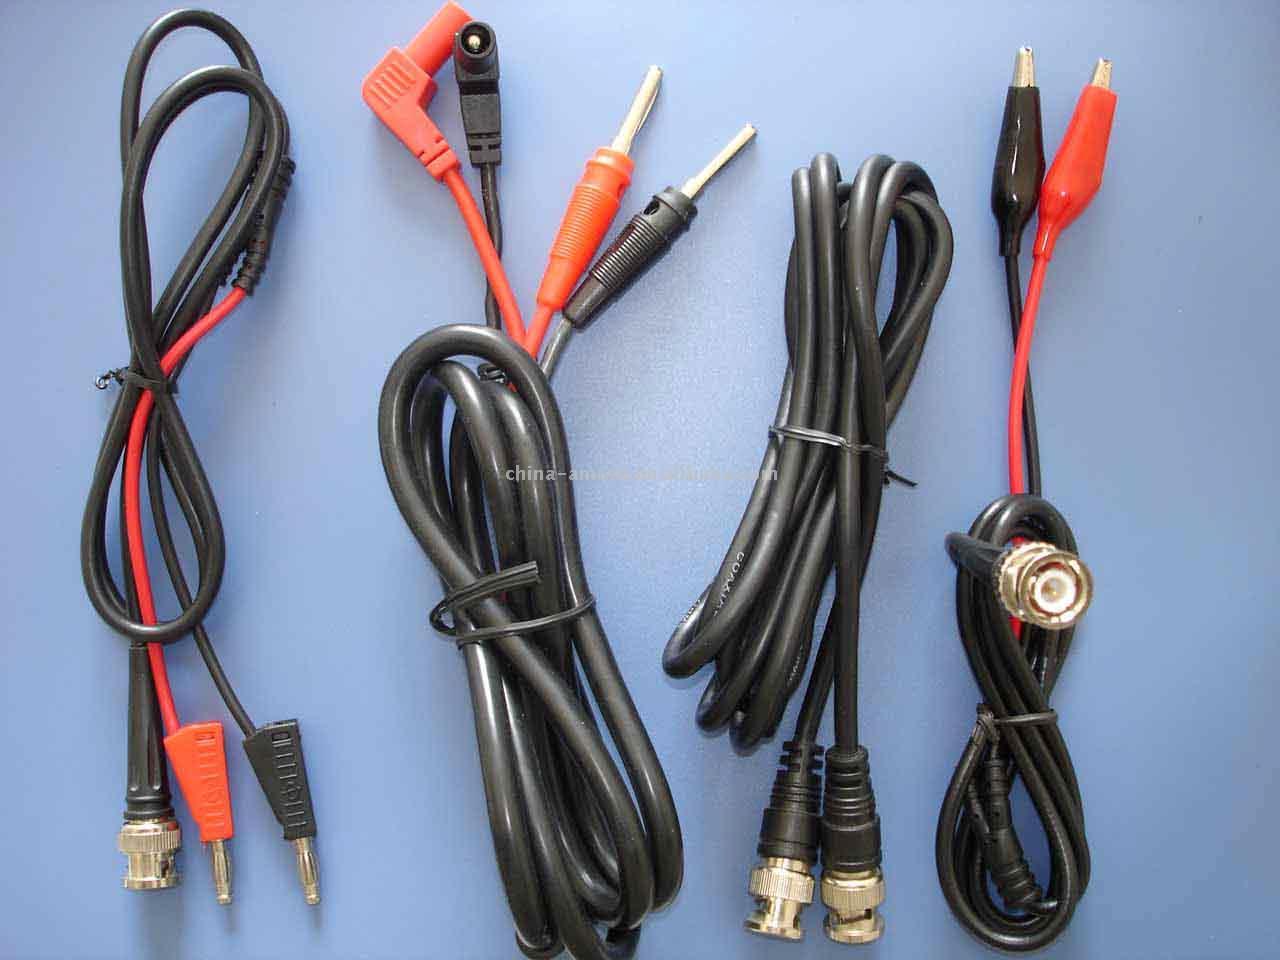  Test Lead Cable (Испытание кабелем)